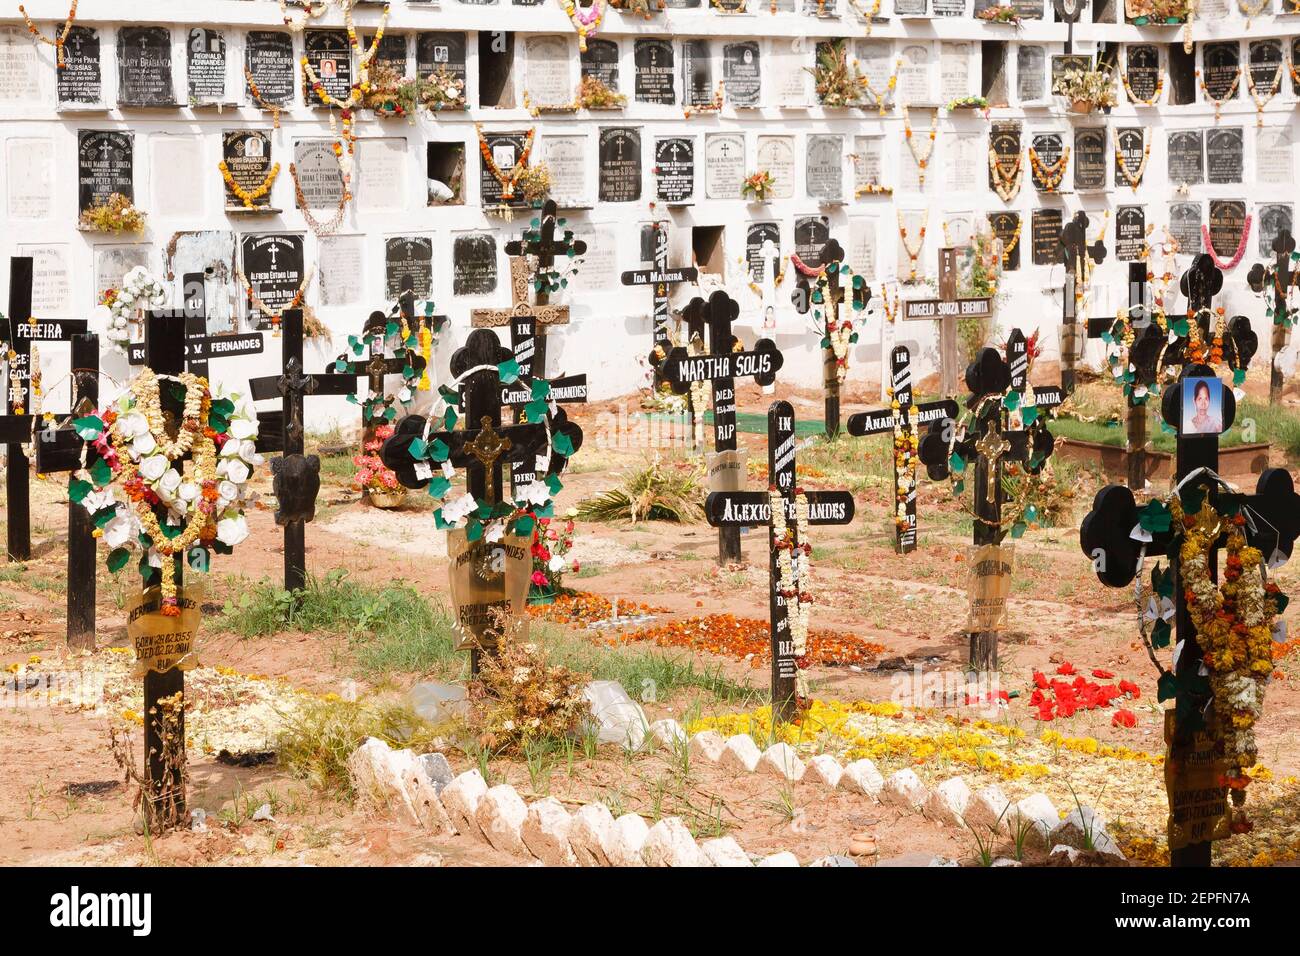 PANAJI, INDIA - 07 novembre 2011. Cimitero, cimitero, terreno di sepoltura con muro di colombario con nicchie o camere. Cimiteri asiatici. Foto Stock